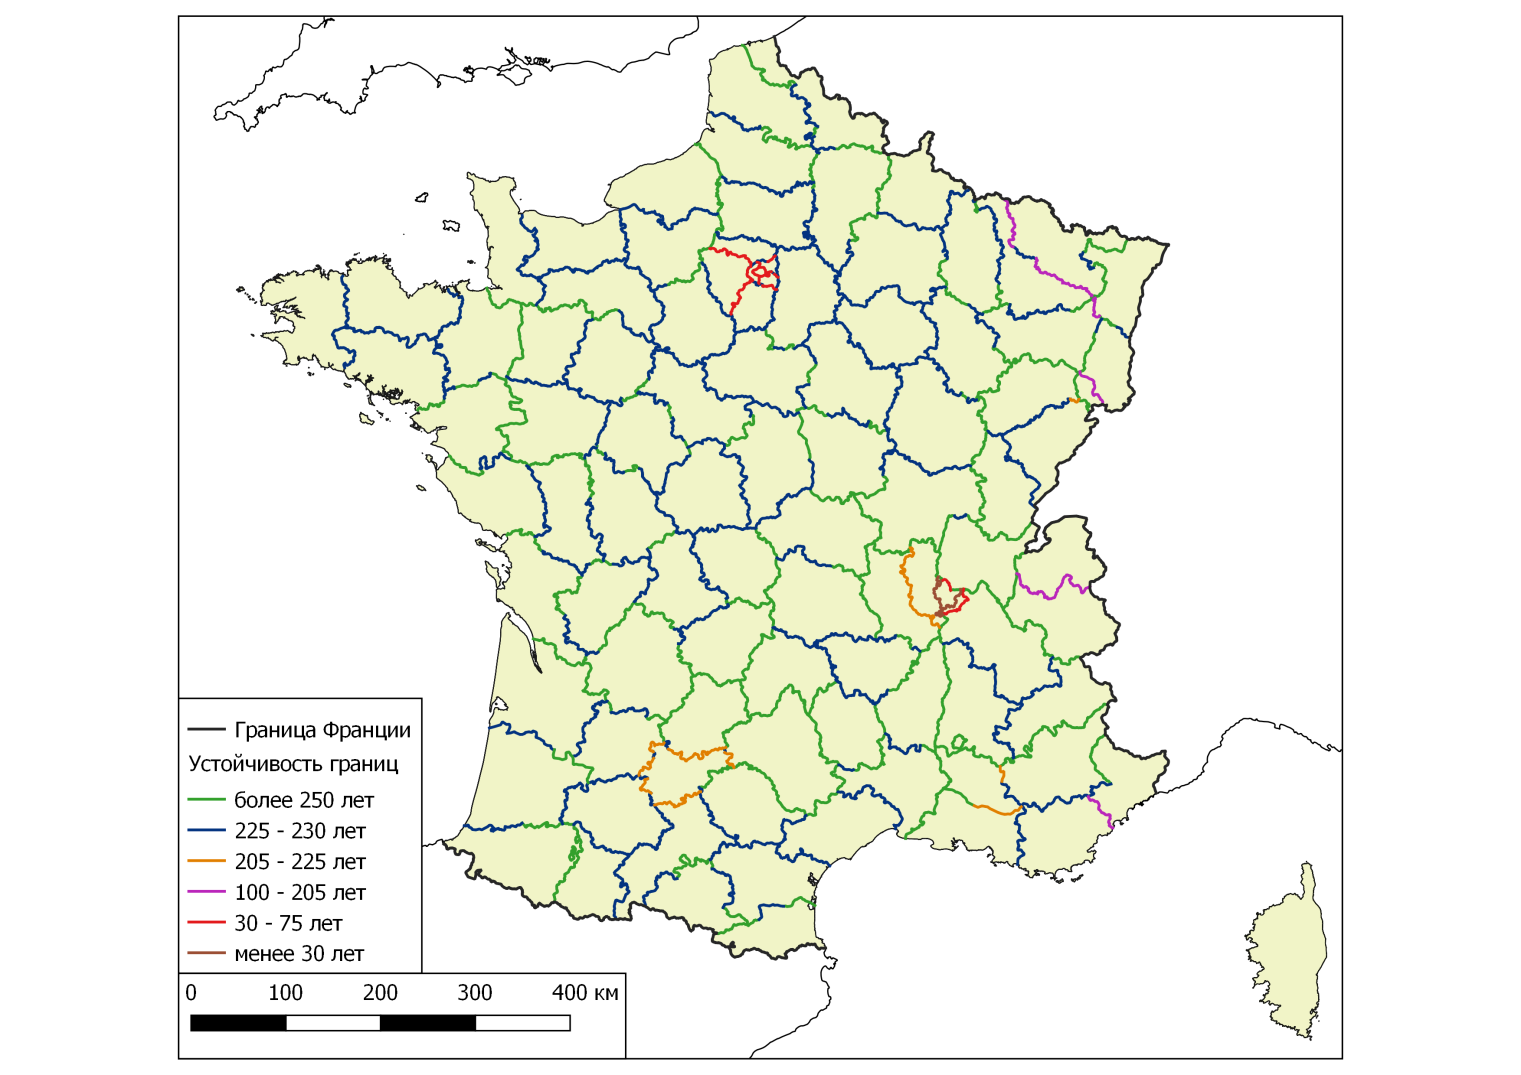 Департаменты Франции на карте. Баркарес Франция на карте Франции. Департамент Франции фото. 96 Департаментов Франции.